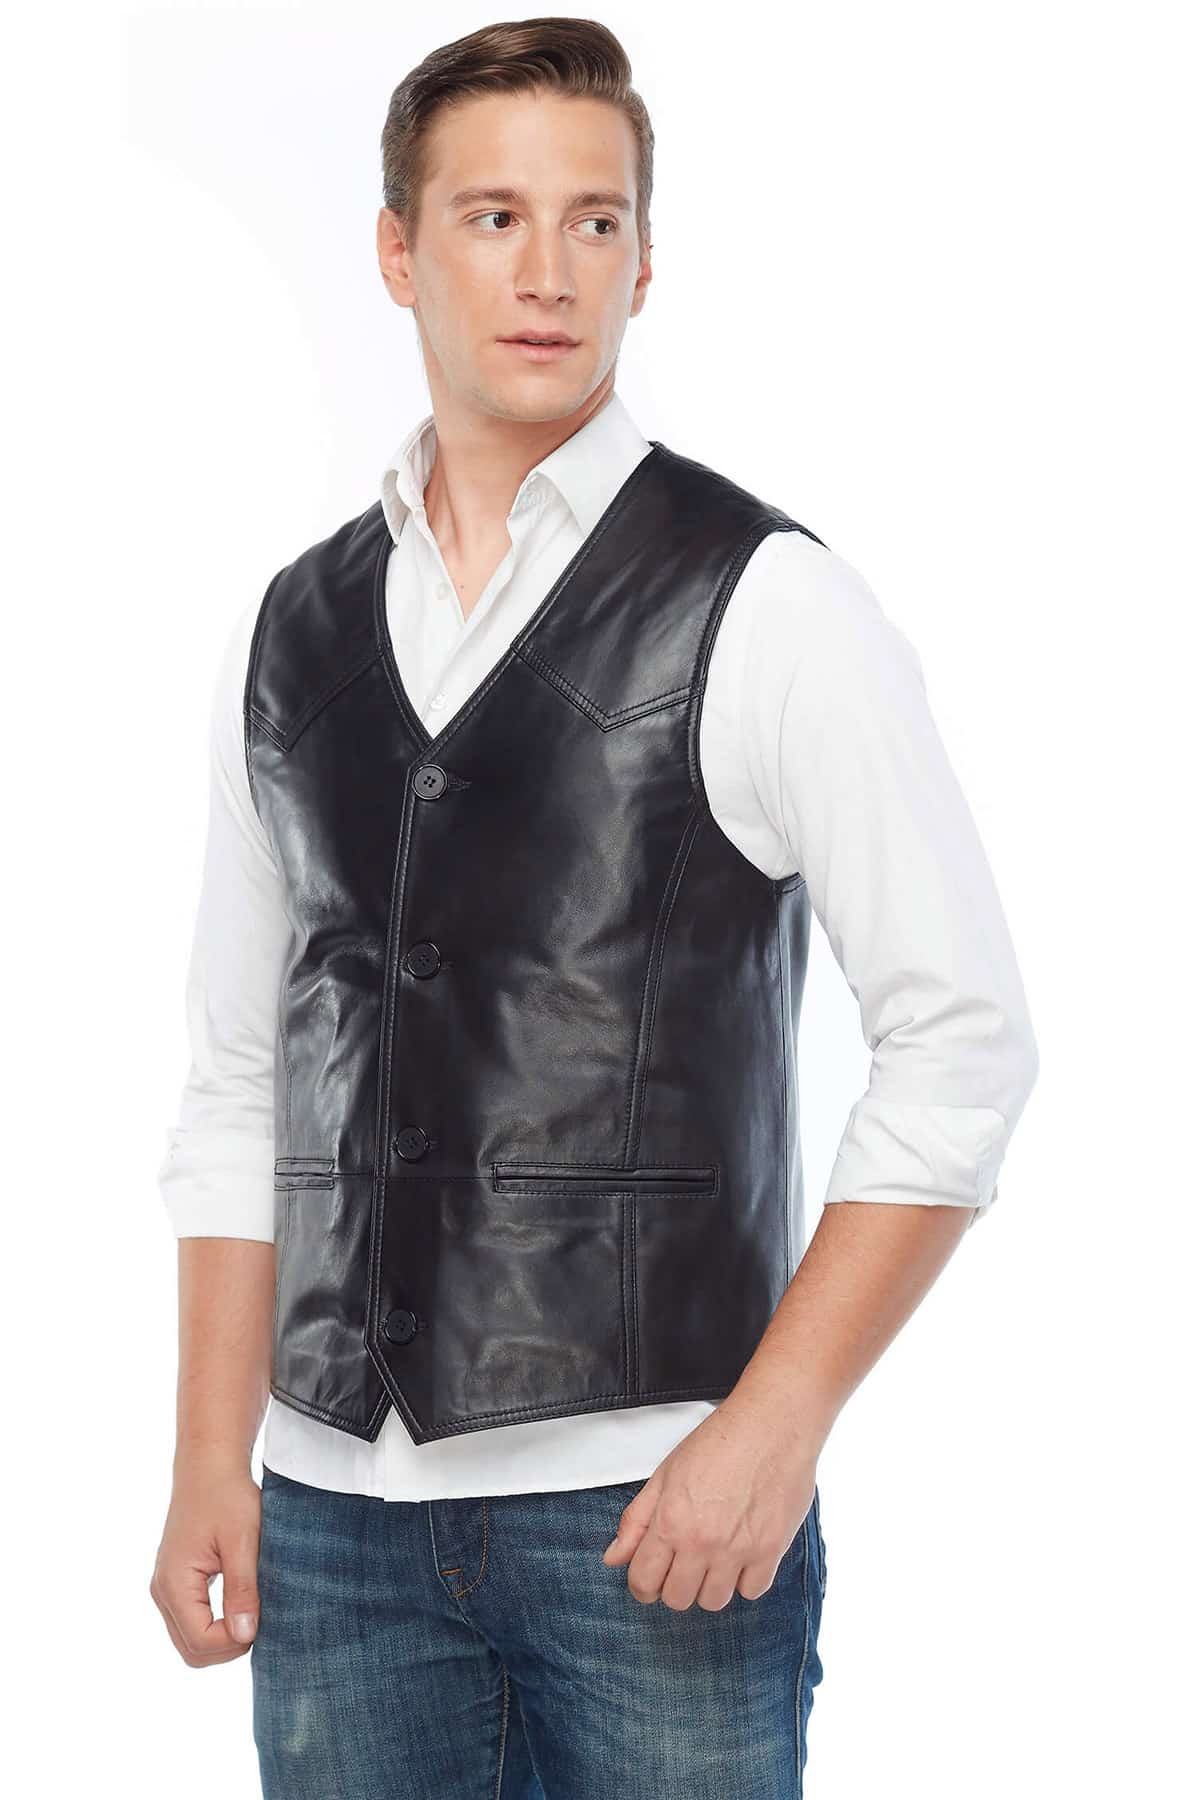 Jack Guinness Genuine Leather Vest Black Side